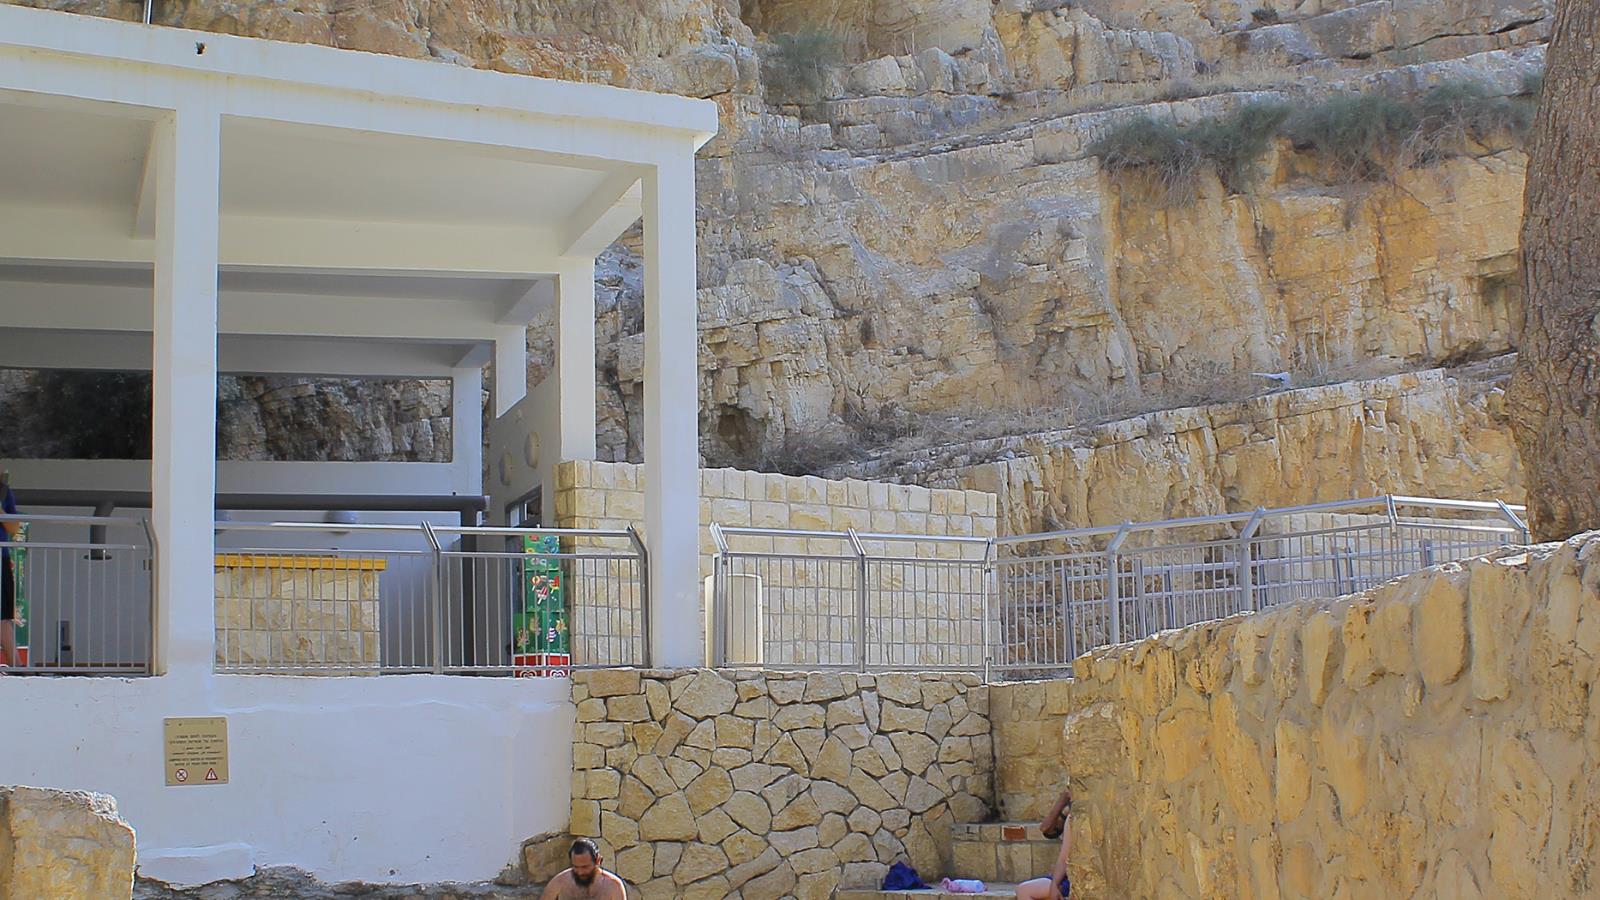  سياح أجانب ويهود بواد القلط في الضفة الغربية التي يستغلها الاحتلال للترويج لسياحته (الجزيرة)